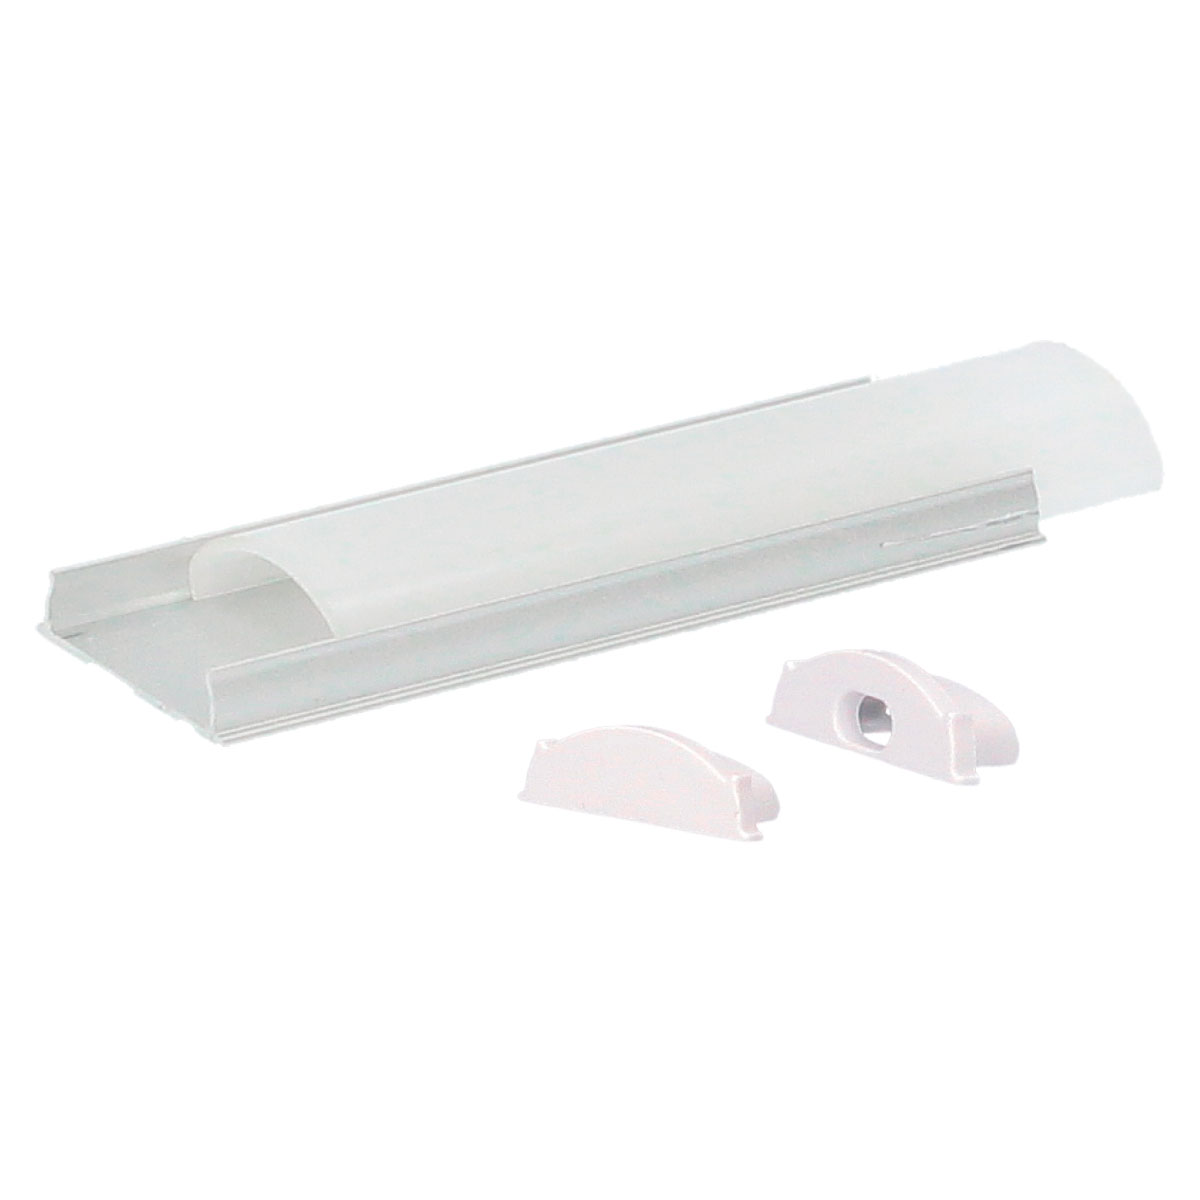 Kit profil aluminium translucide de surface ovale 2 M pour bandes LED jusqu'à 14 mm